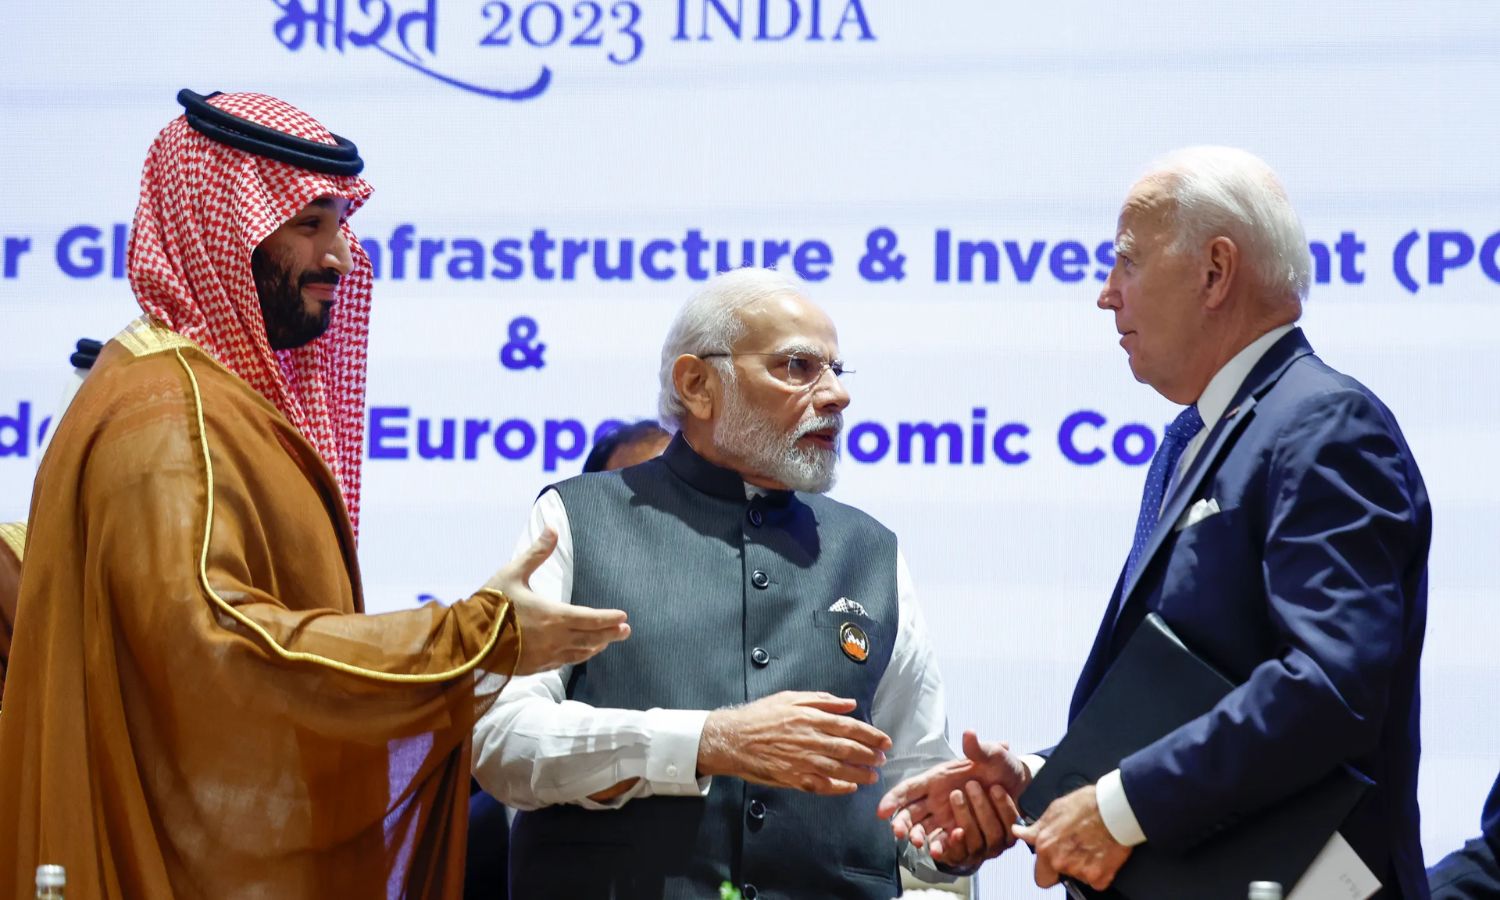 الرئيس الأمريكي جو بايدن (يسار) ورئيس الوزراء الهندي ناريندرا مودي (وسط) وولي العهد السعودي محمد ابن سلمان (يسار) يتحدثون خلال قمة مجموعة العشرين في نيودلهي- 9 من أيلول 2023 (AP/ Evelyn Hockstein)